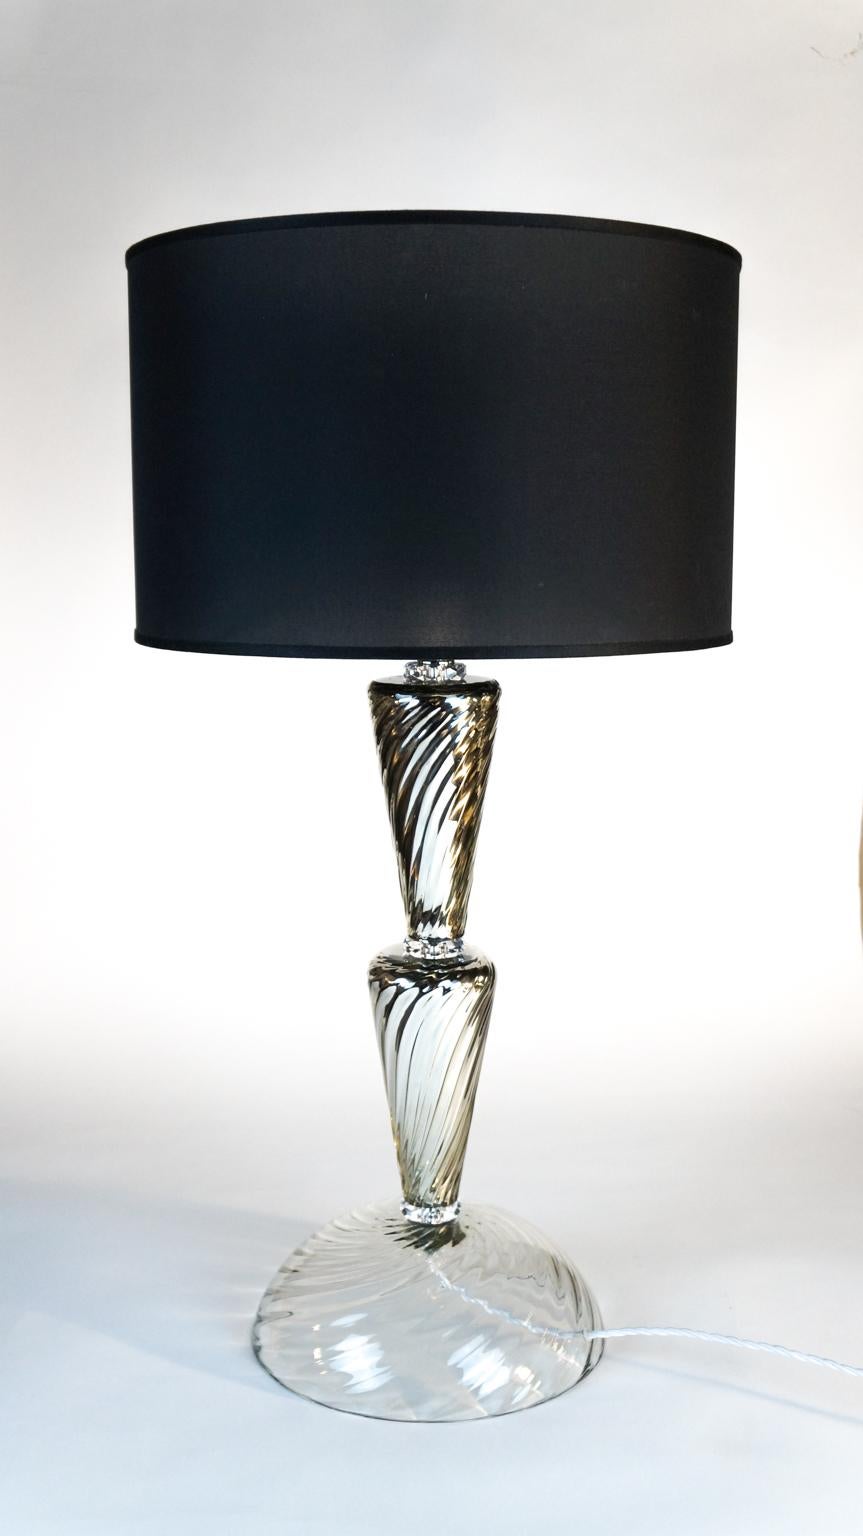 Soutenue par une importante base ronde de 30 cm de diamètre, cette lampe de table particulière se poursuit par deux cônes en miroir entre lesquels sont encadrés de petits cristaux qui créent un élégant jeu de lumière.
Projet du maître verrier de